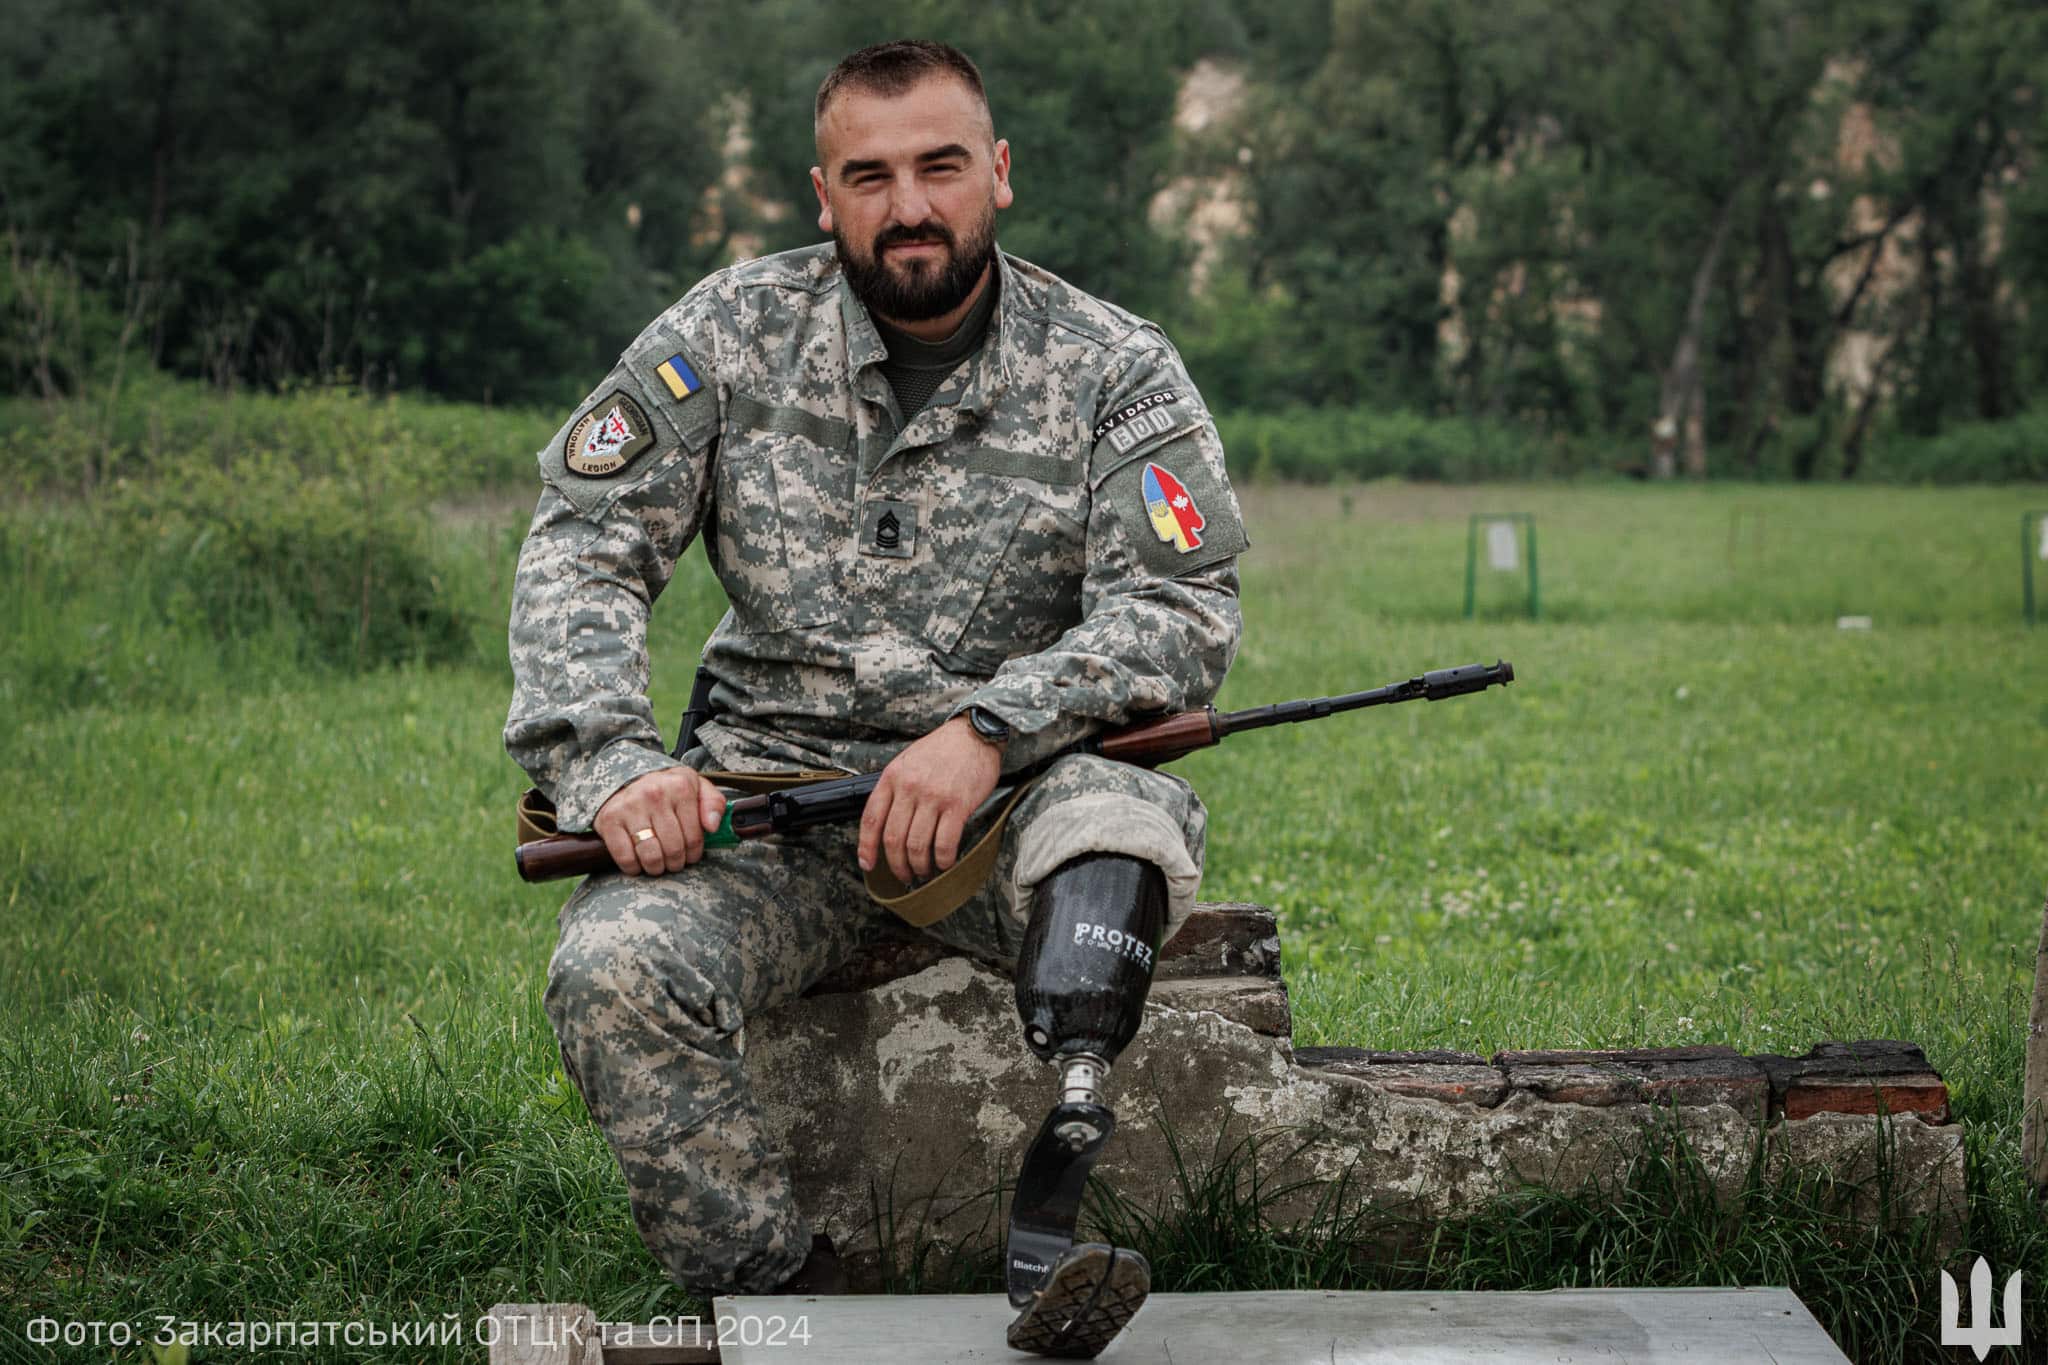 Likvidator, або Звідки іменний пістолет від Буданова у військовослужбовця ТЦК